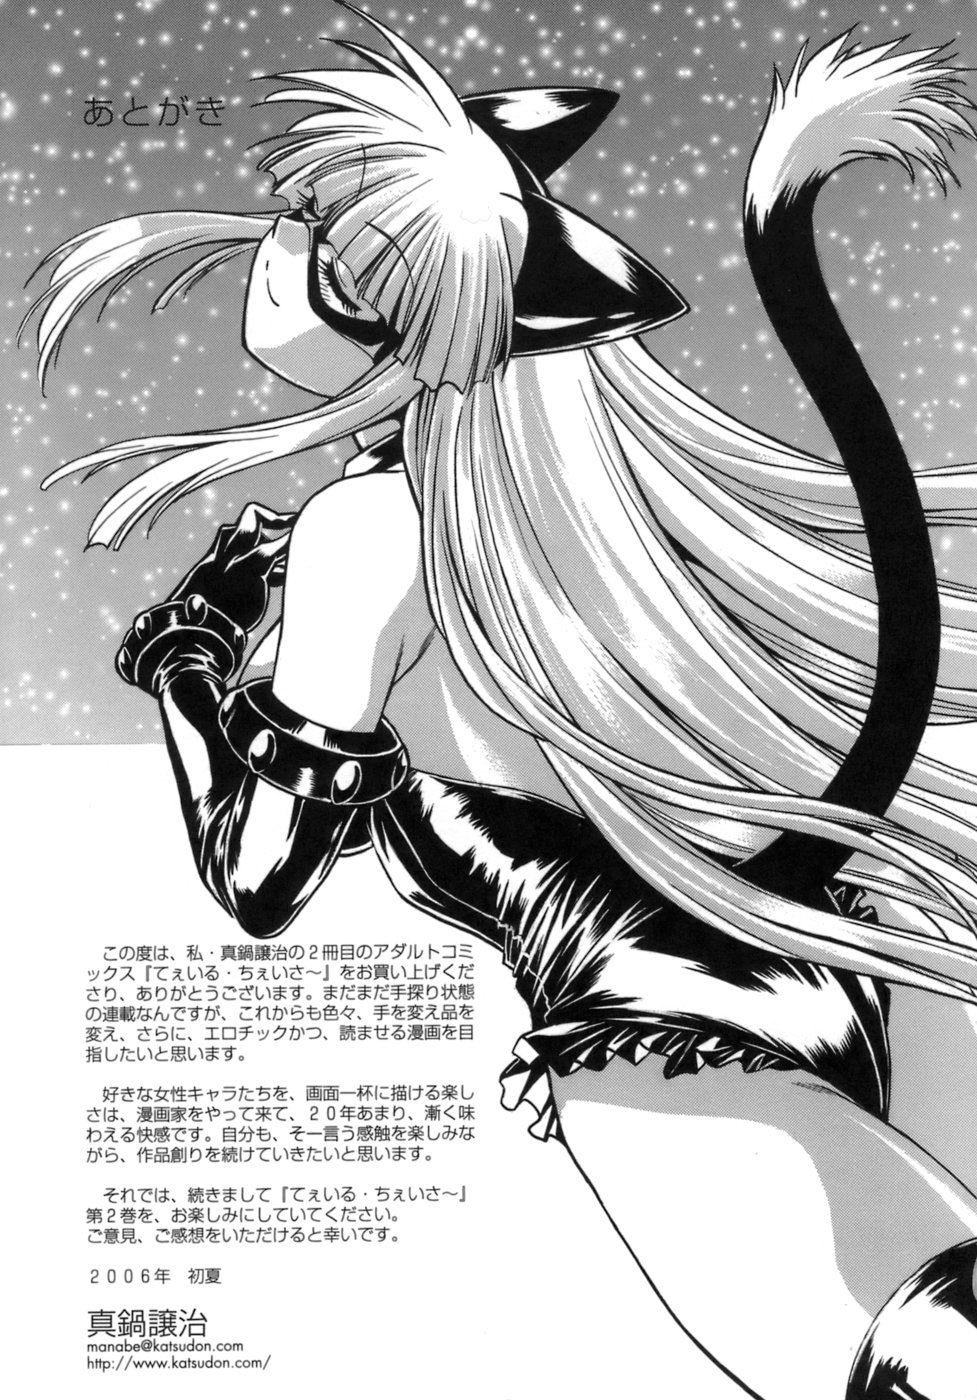 Tail Chaser Vol.1 192 hentai manga